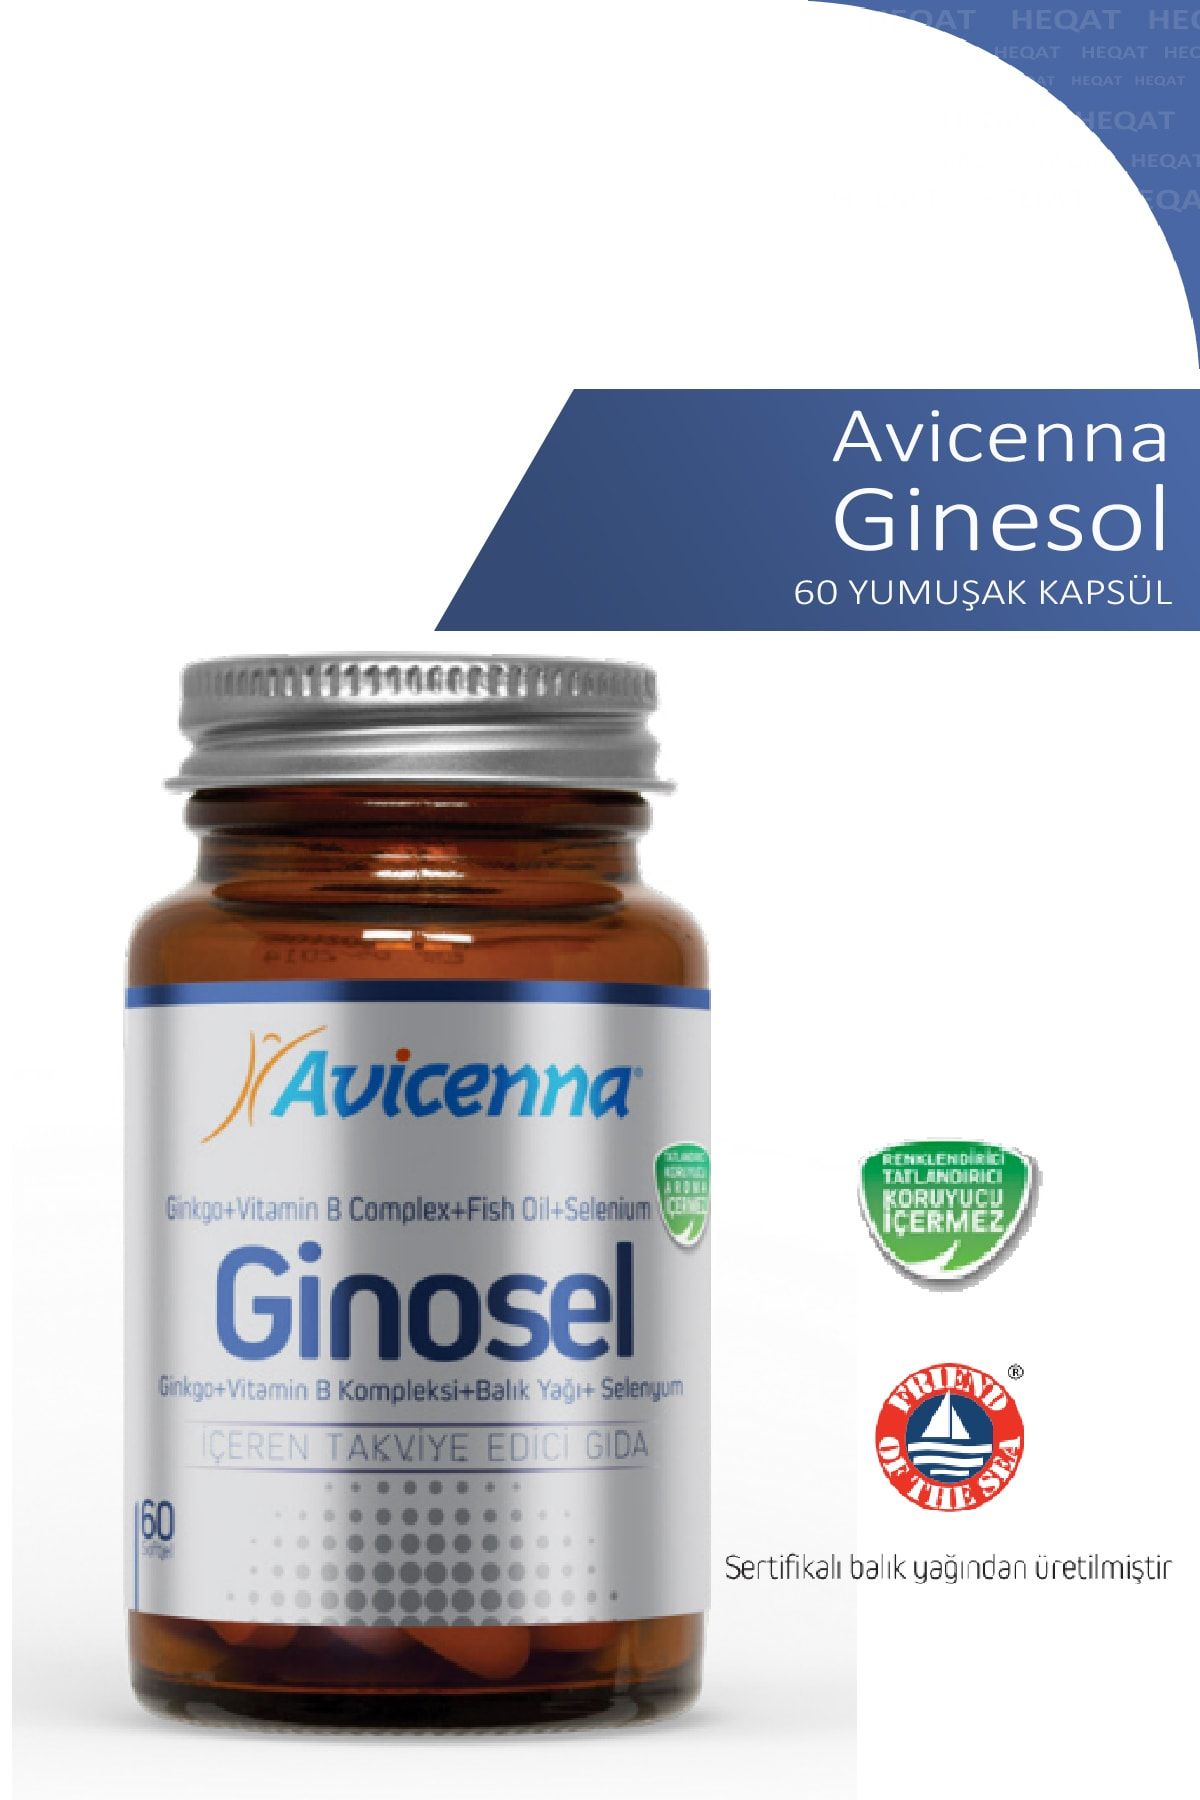 Avicenna Ginosel - Balık Yağı, Gingko, Vitamin B, Selenyum Içeren Takviye Edici Gıda - 60 Softgel Kapsül